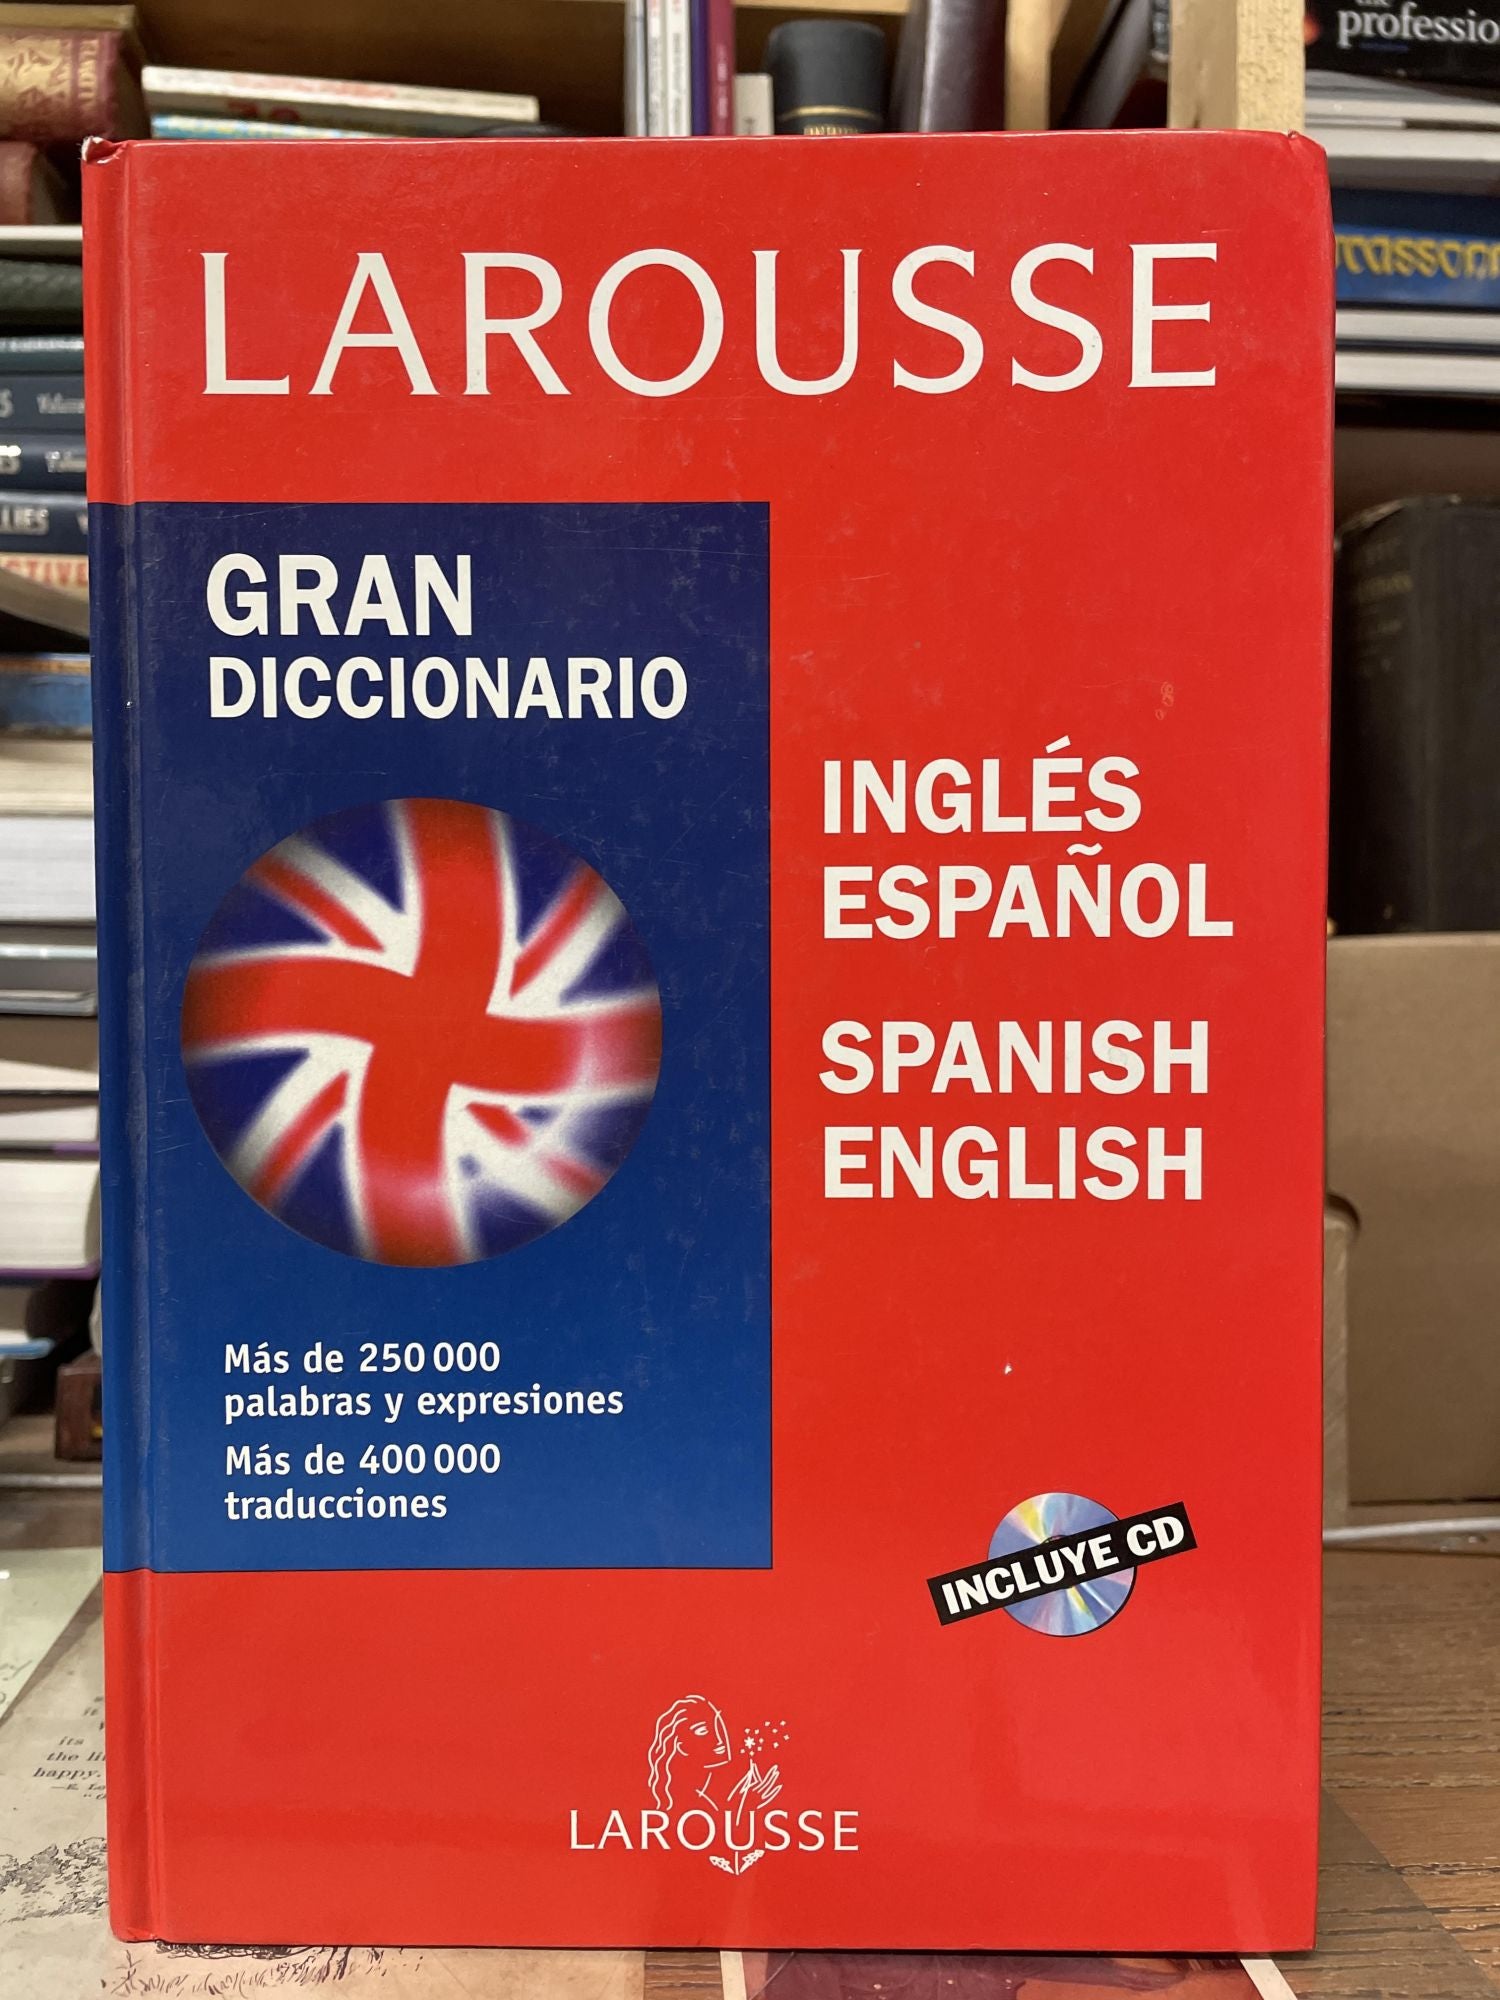 Larousse Gran Diccionario/ Larousse Ingles Espanol/ English